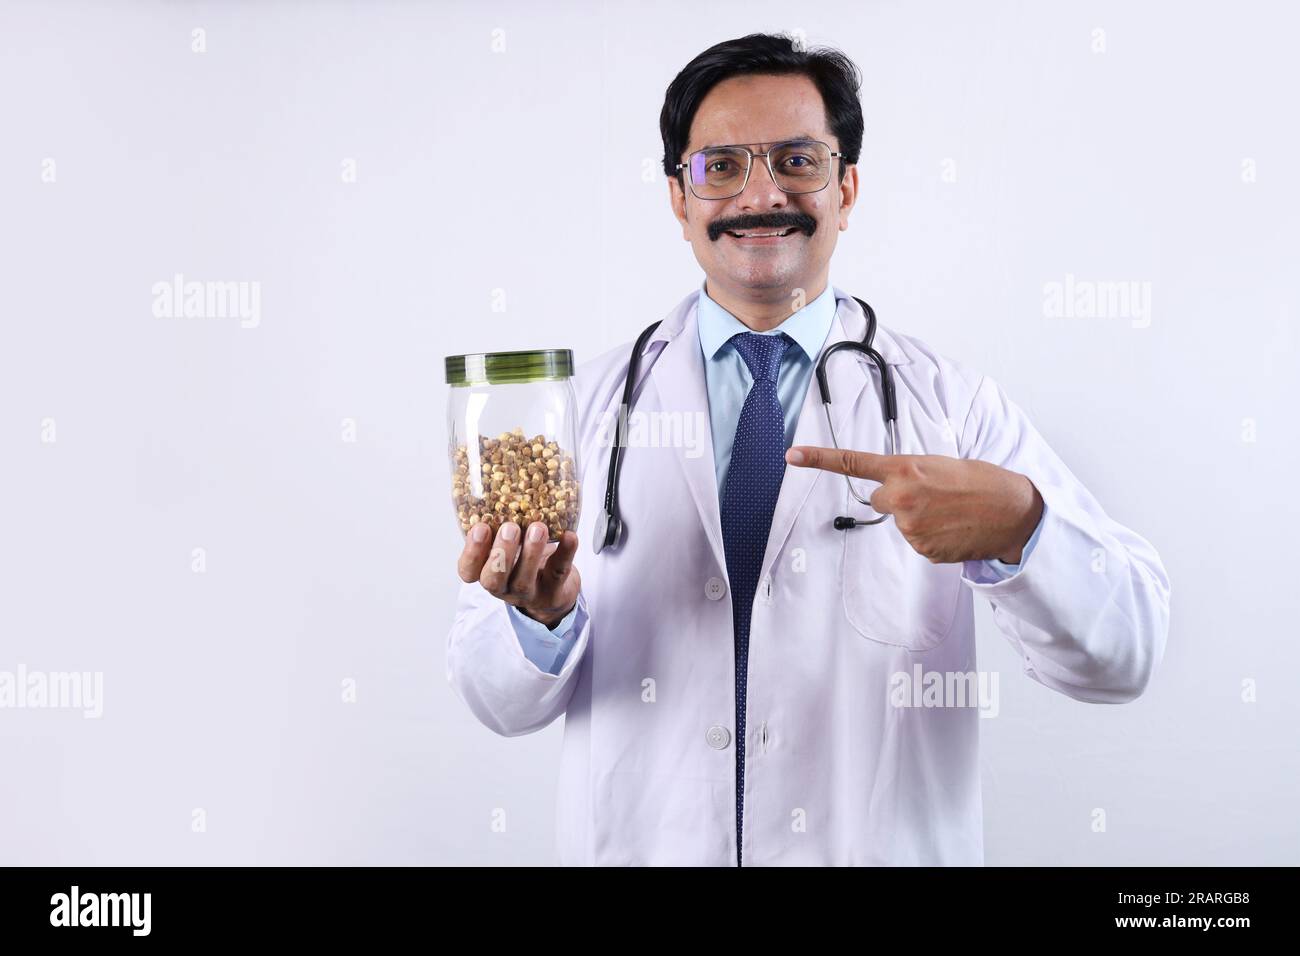 Docteur confiant indien tenant un pot en main et suggérant de manger frais et sain. Le docteur debout sur un fond blanc. Banque D'Images